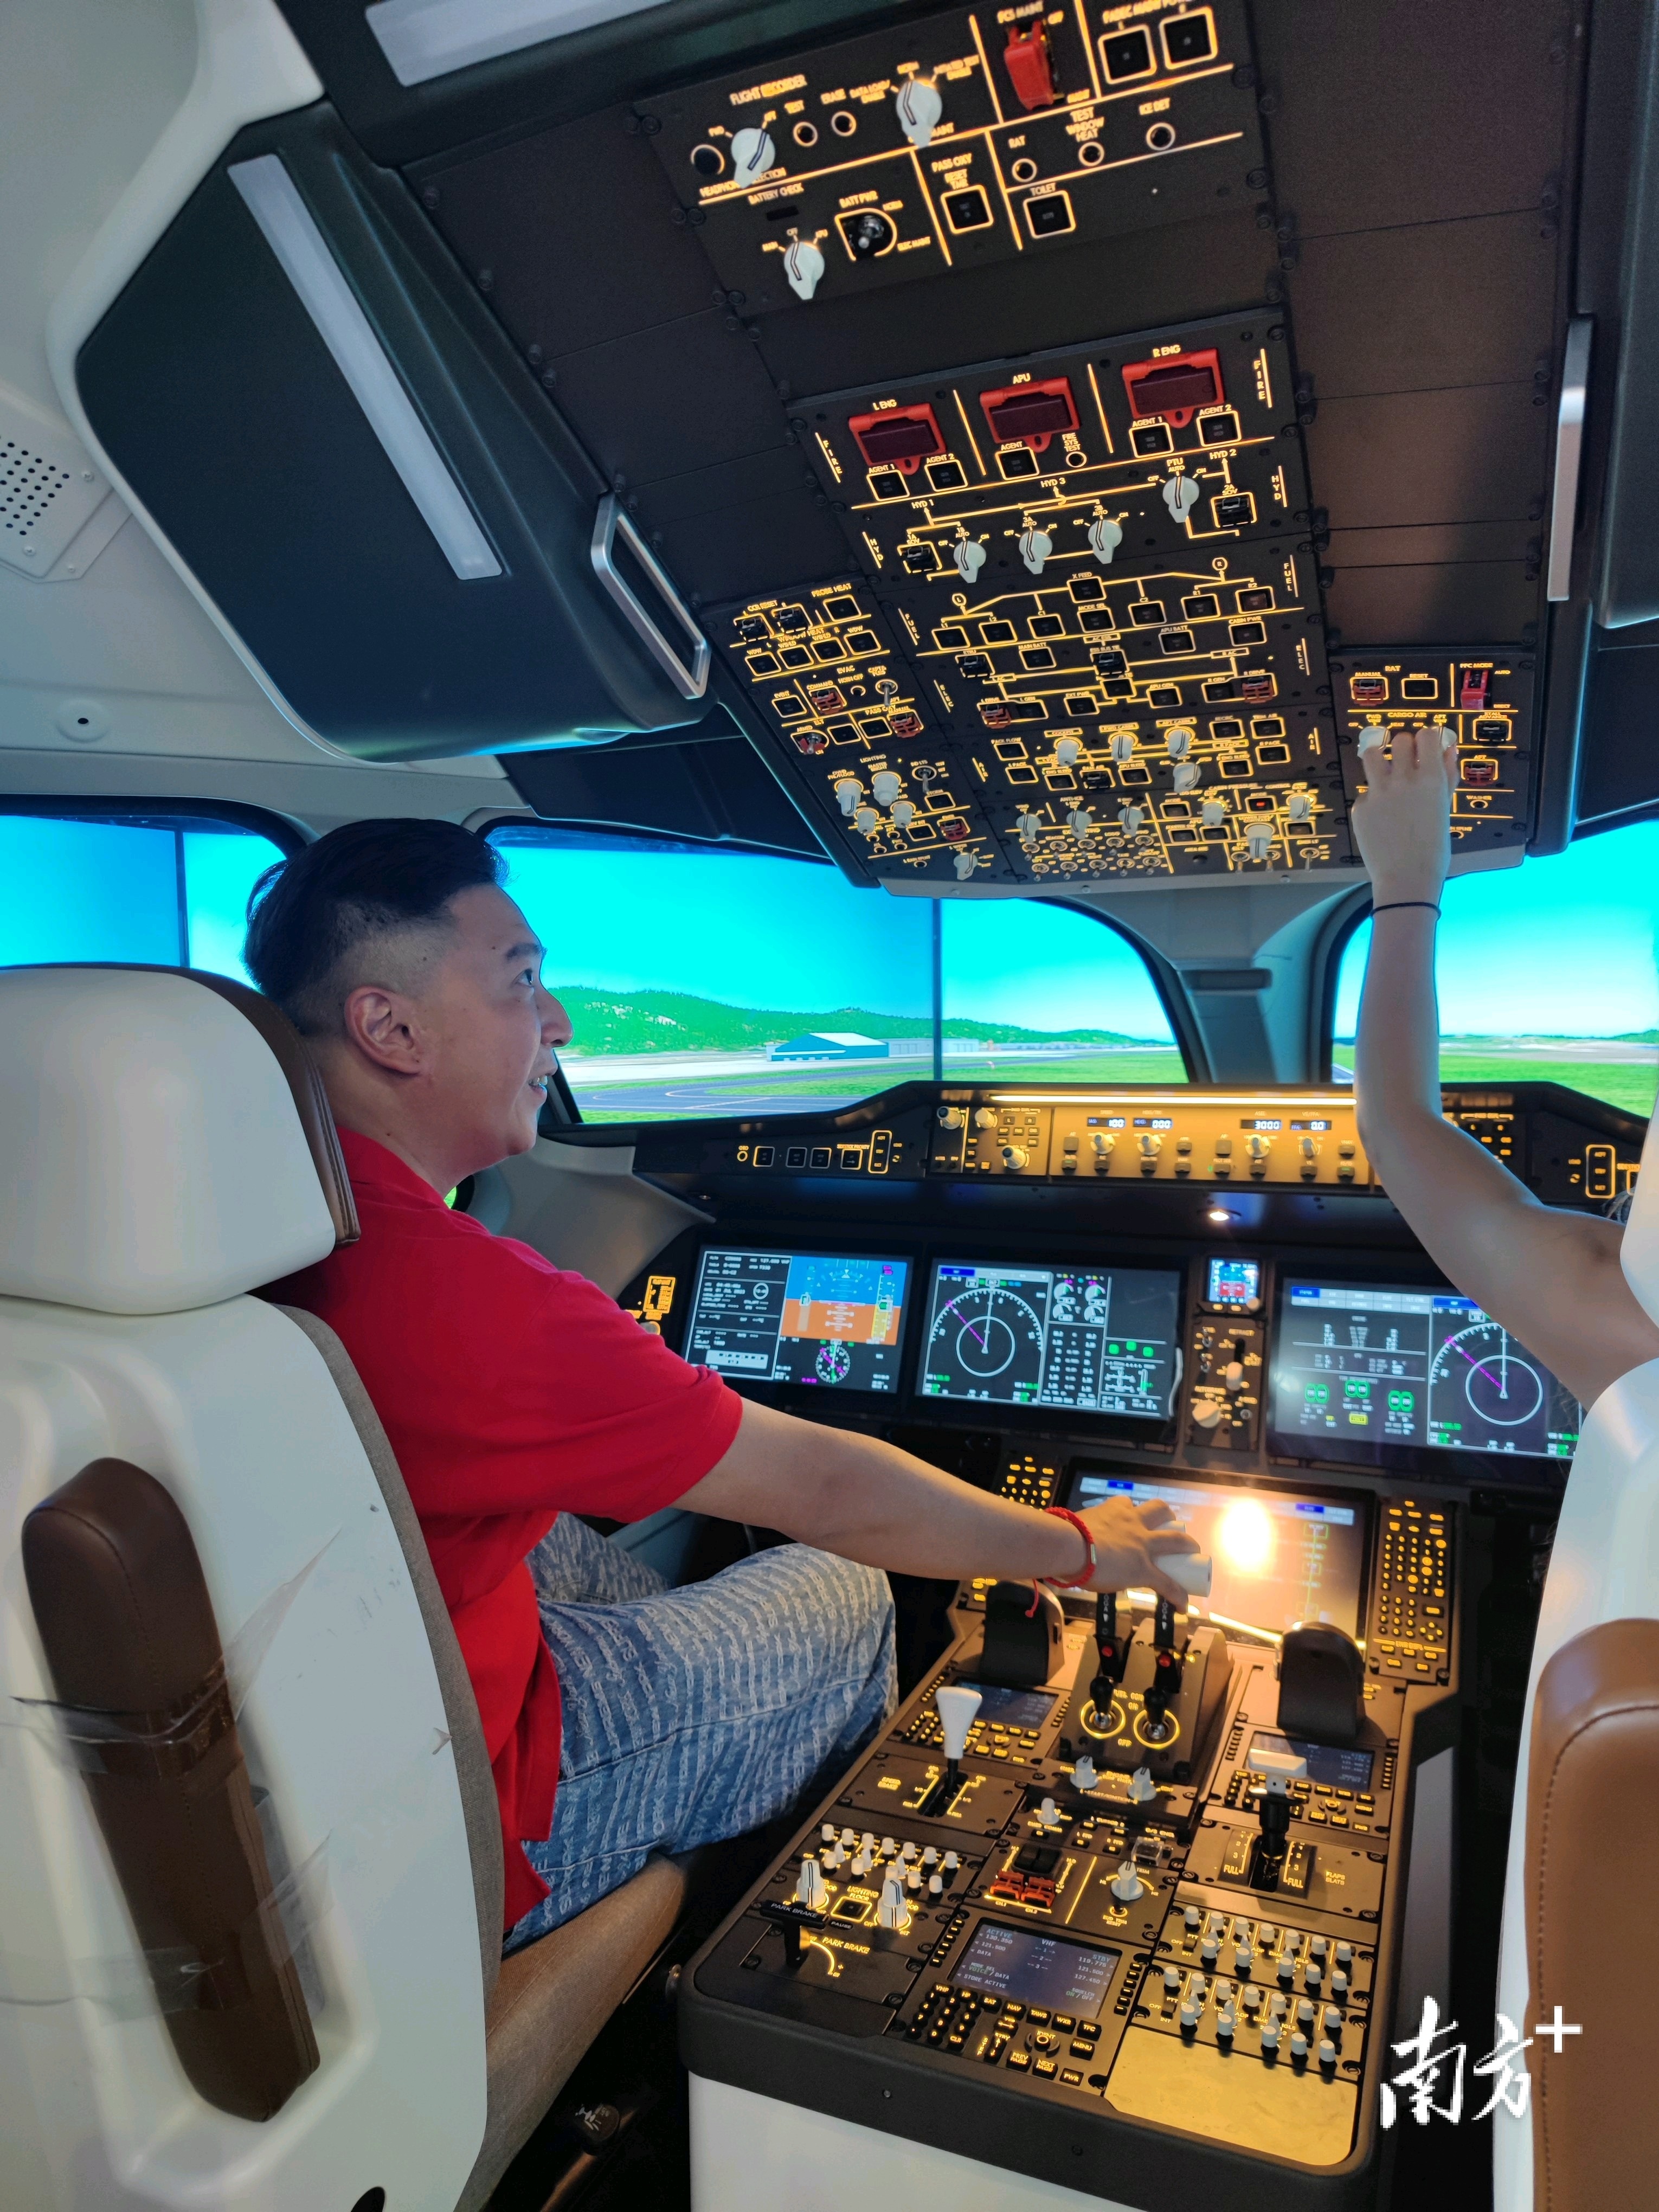 在试驾大飞机c919的互动体验区域,李伯欣登上驾驶舱,操纵模拟器控制